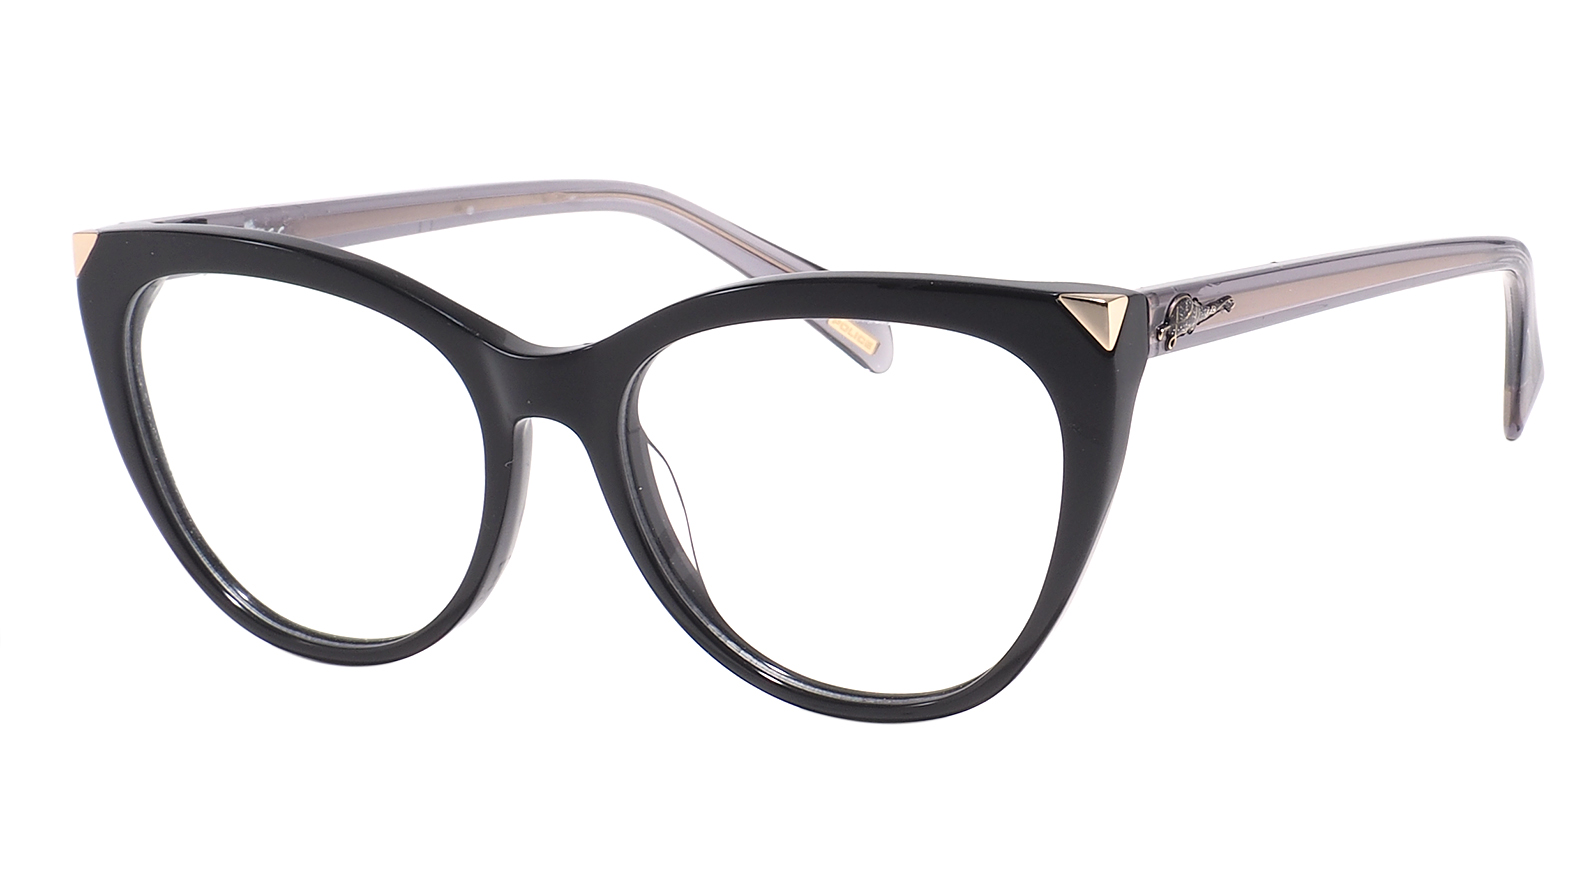 Police Sparkling Grace C26 700 dubery двойные серые прогрессивные очки для чтения фильмов мужские и женские смоляные очки для чтения